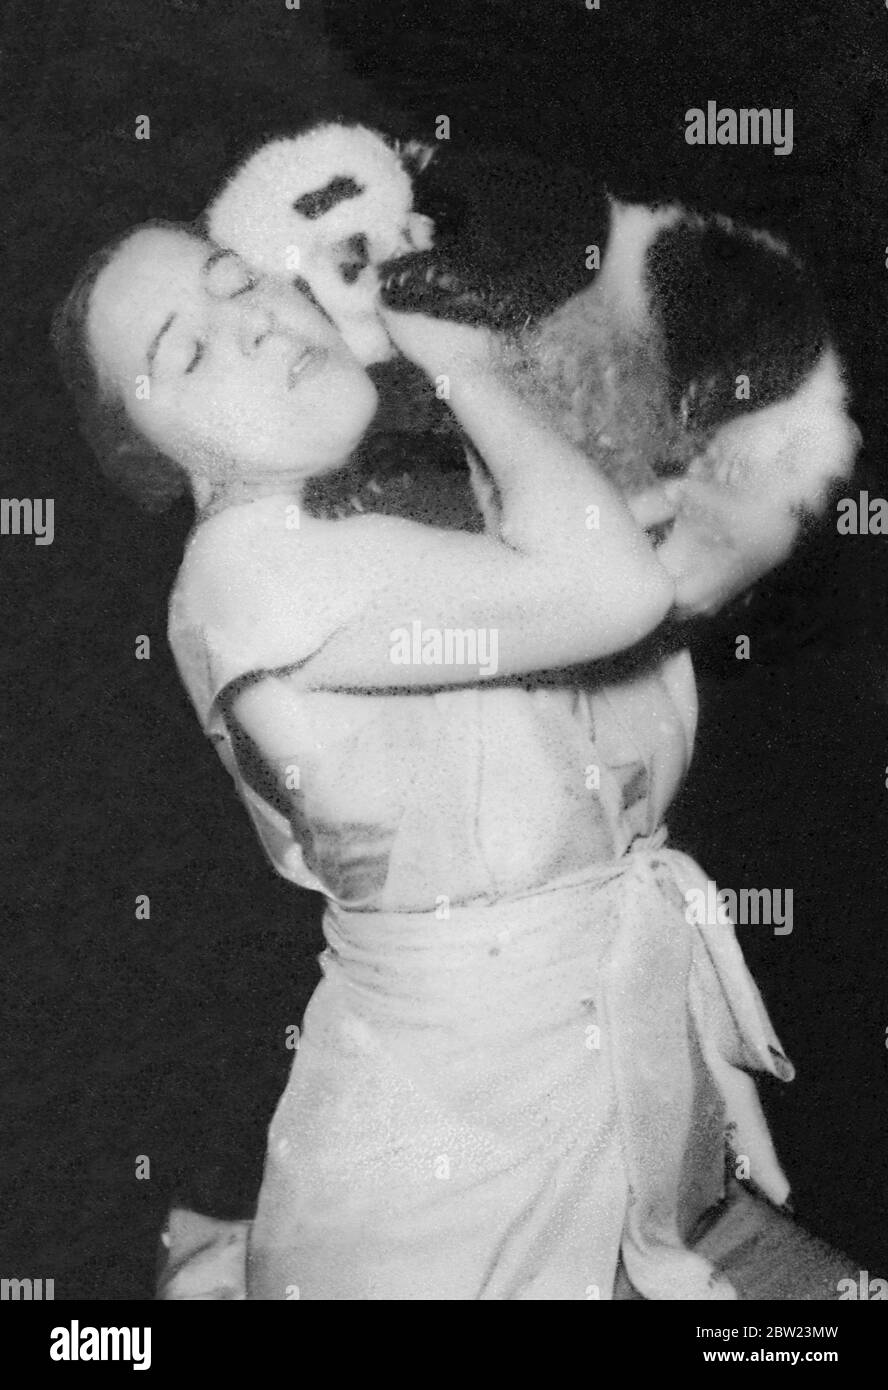 Mme Ruth Harkness Explorer, veuve d'un explorateur, a réussi à capturer vivant un bébé géant panda, l'un des animaux les plus rares au monde. 15 février 1938 Banque D'Images